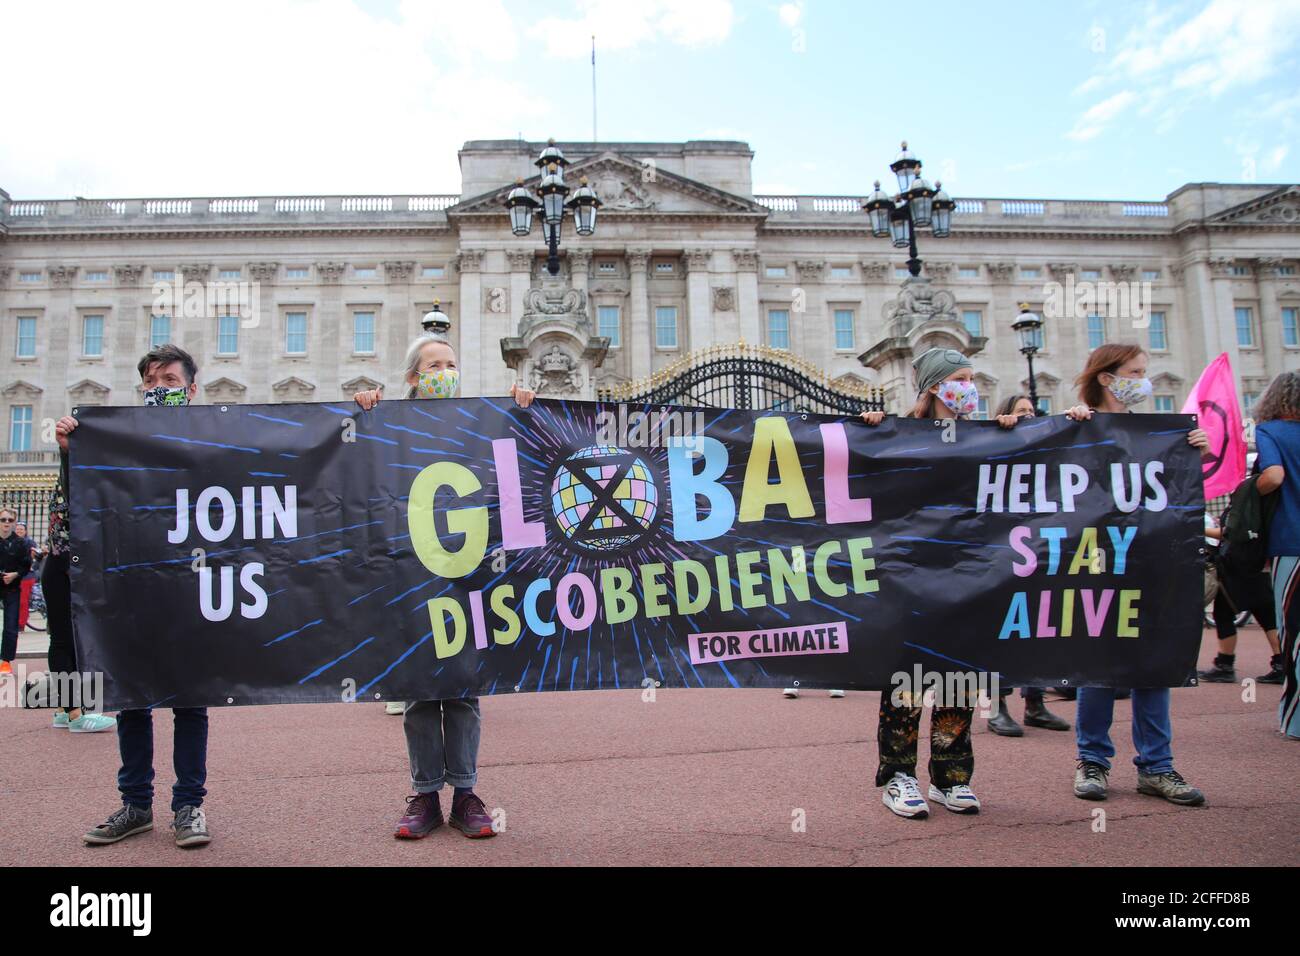 Buckingham Palace, London, UK 5th. September 2020 Extinction Rebellion Aktivisten vor dem Buckingham Palace in London veranstalten einen Diskobedienz-Tanz aus Protest. Demonstranten halten ein Banner mit der Aufschrift "Globale Diskobedienz" Stockfoto